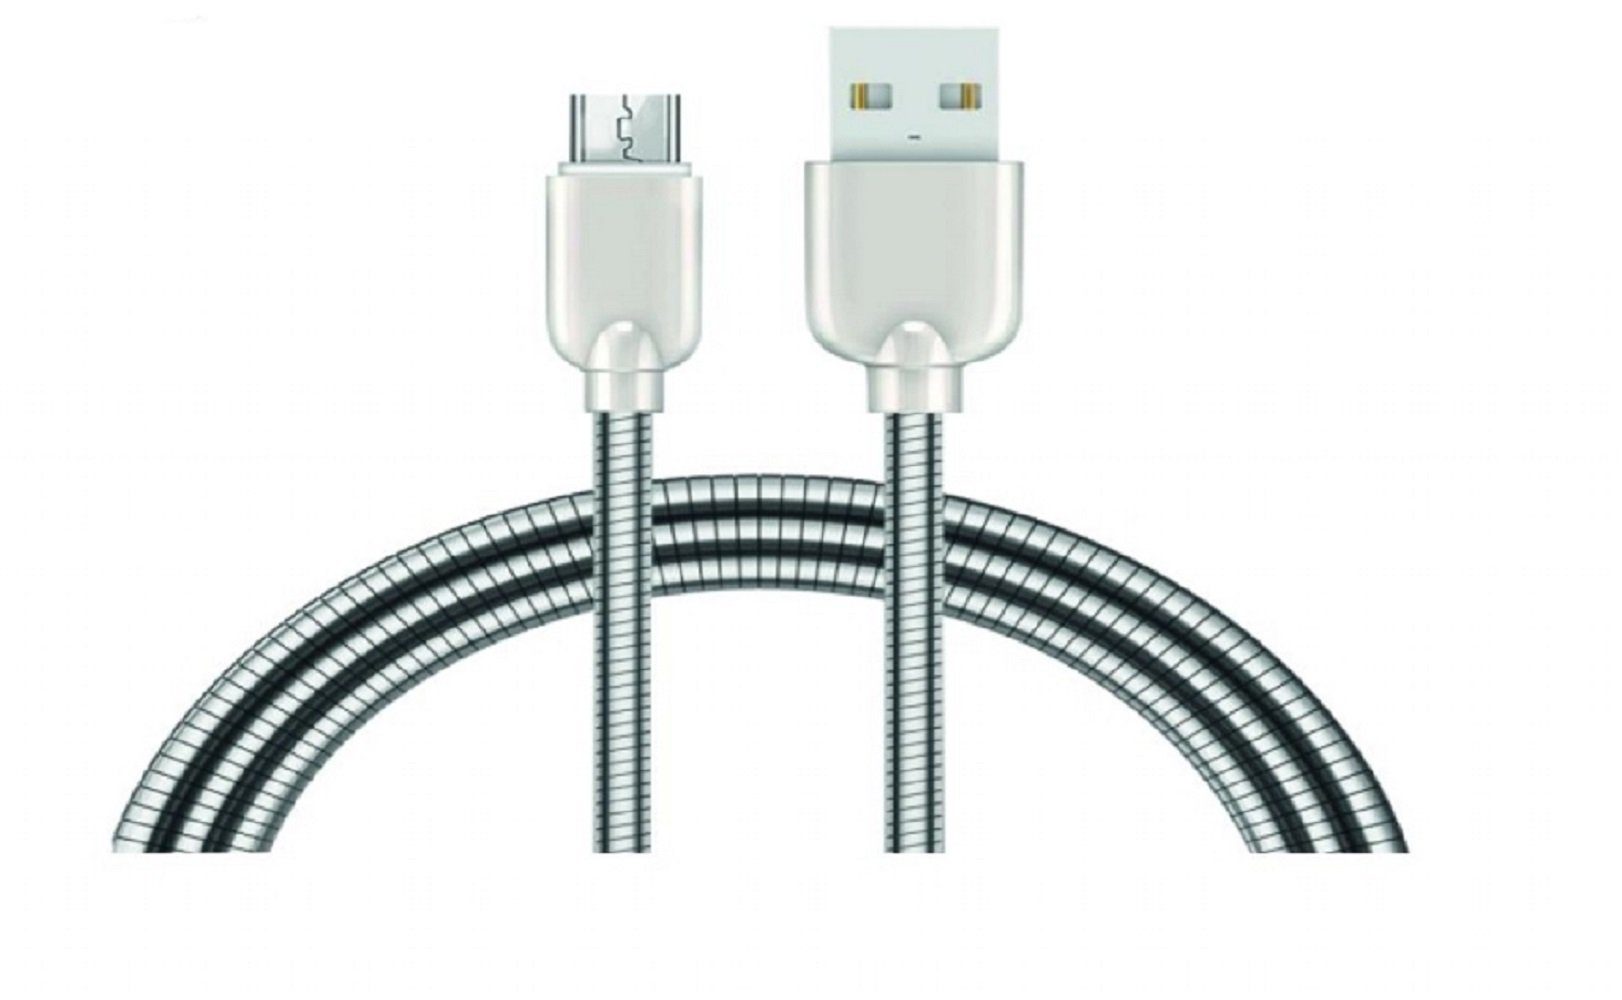 Sunix »2A Schnell Ladekabel Nylon Datenkabel 1m Micro-Usb Metall Kabel Sehr  Biegsam Dehnbar Robuste Stecker Fast Charge Power Kabel« USB-Kabel, Micro-USB  online kaufen | OTTO